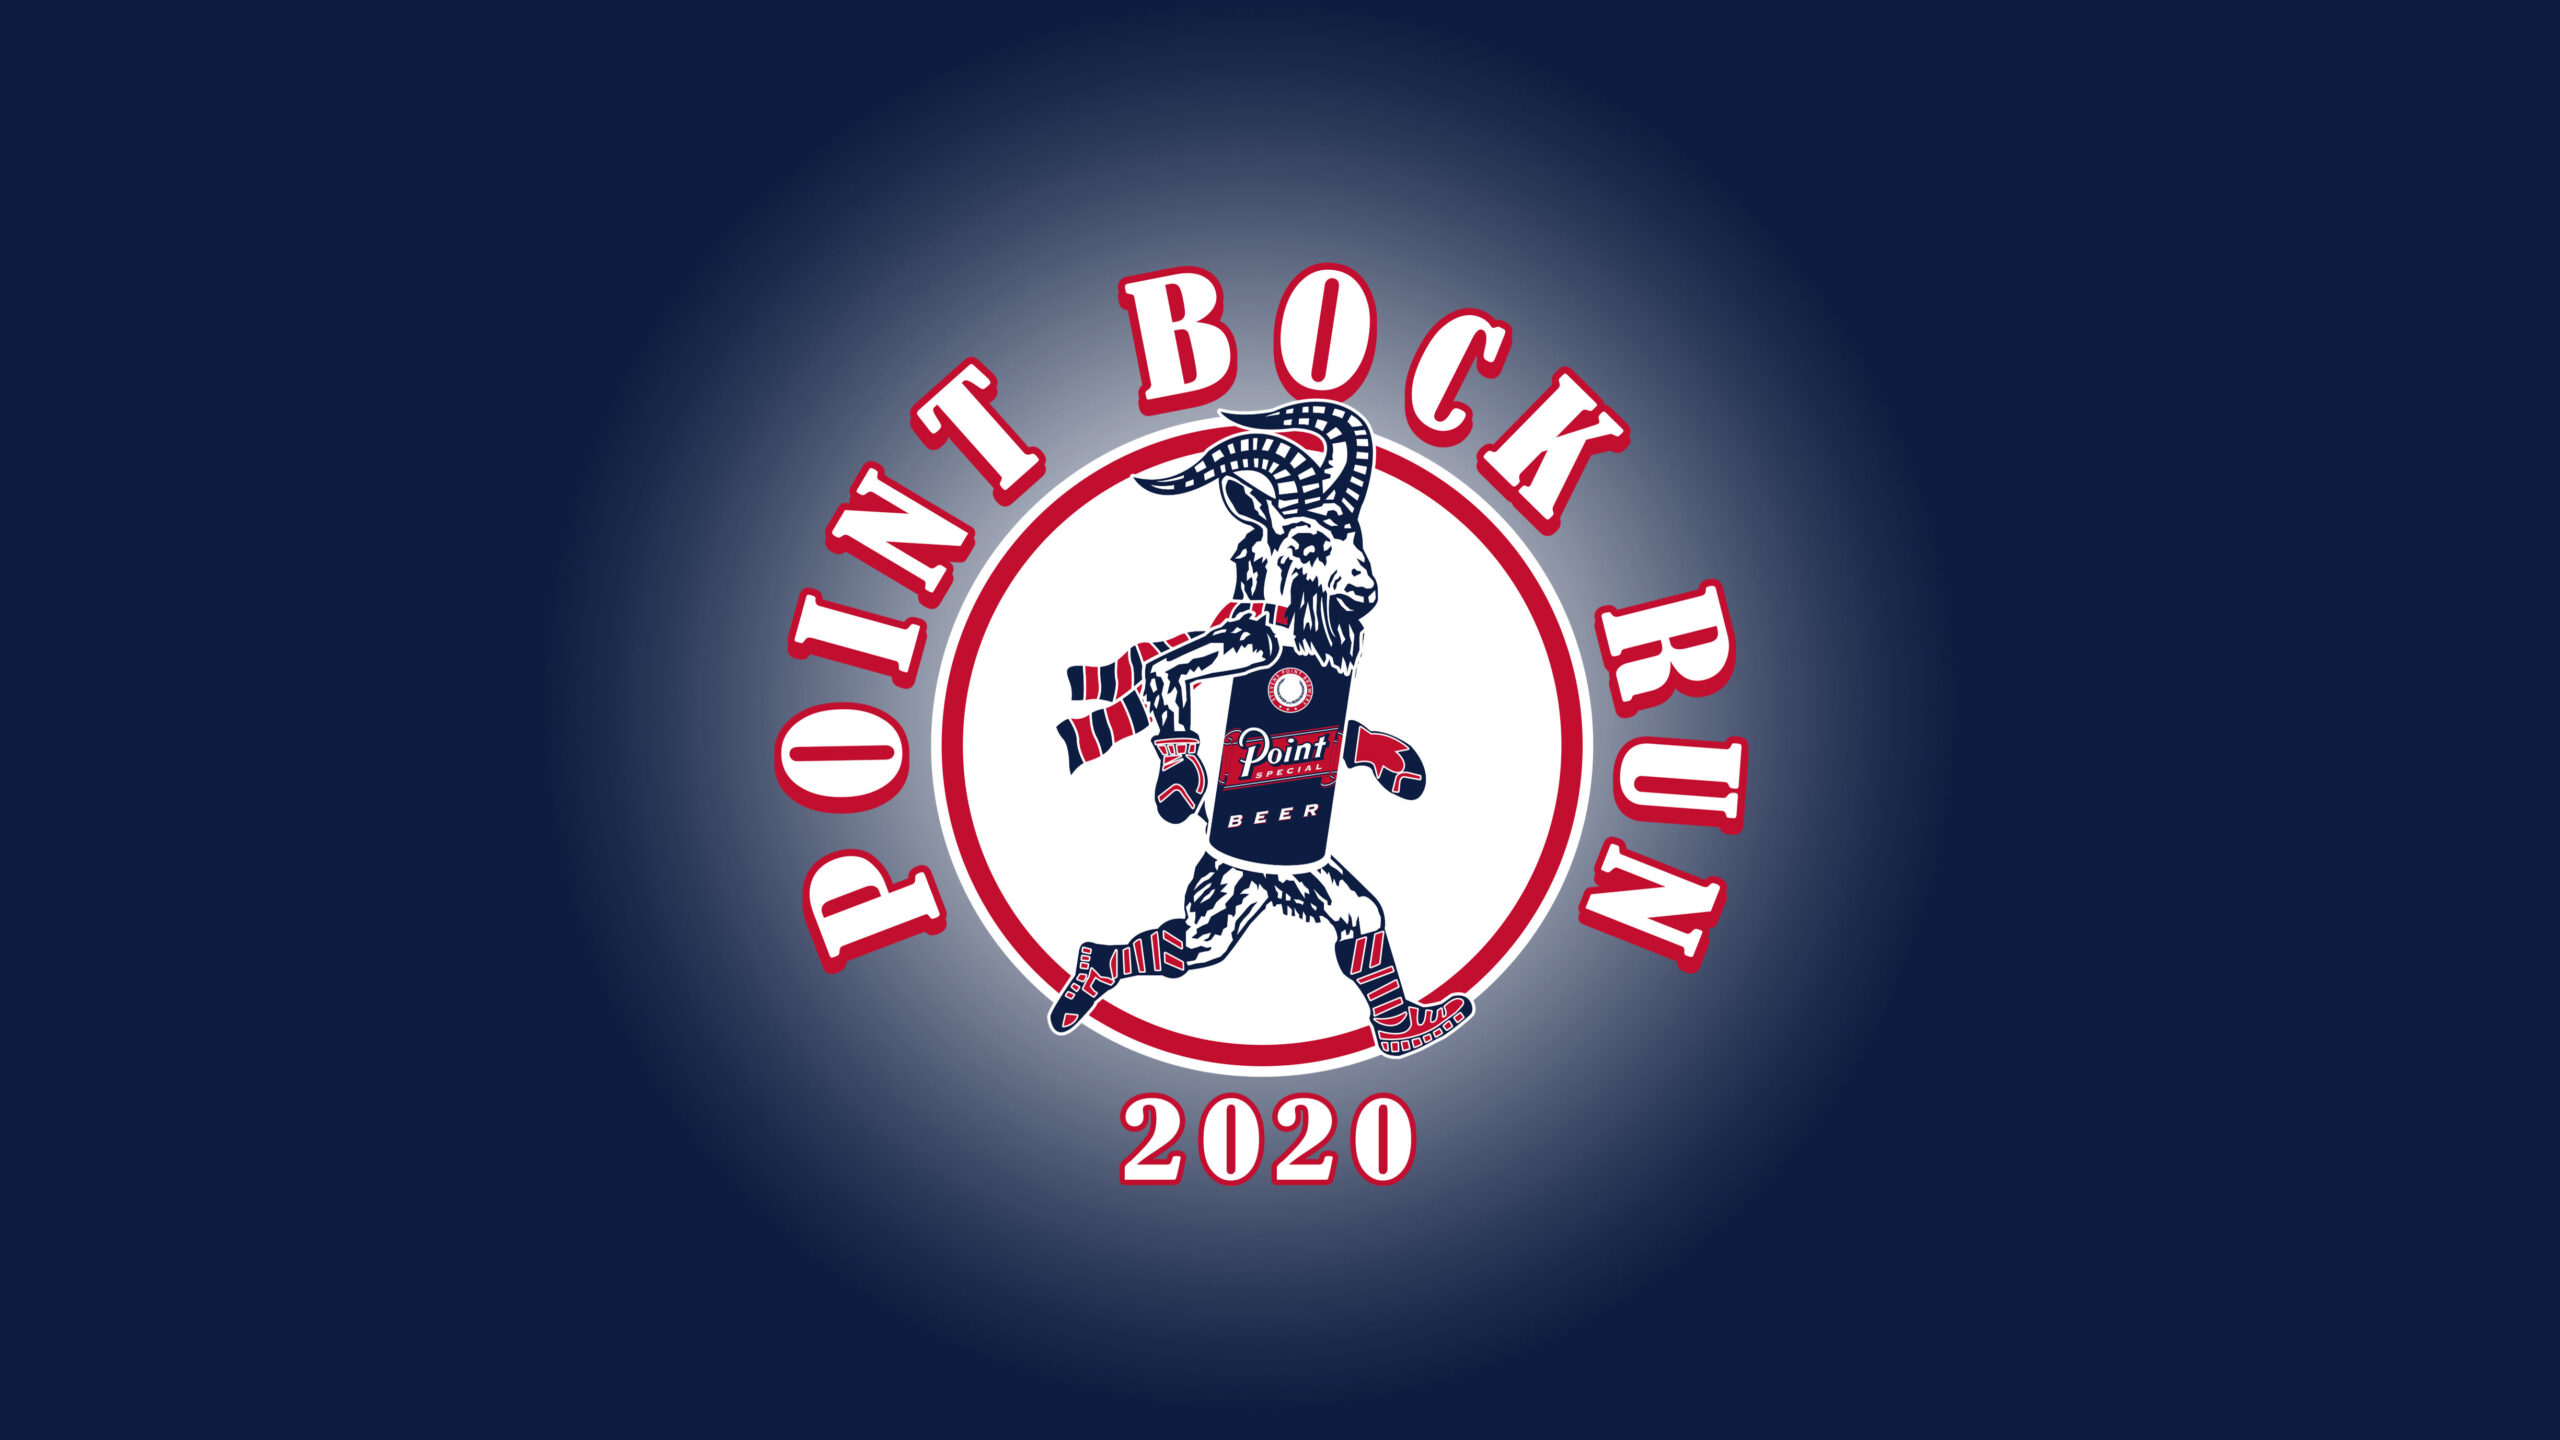 Bock Run 2020